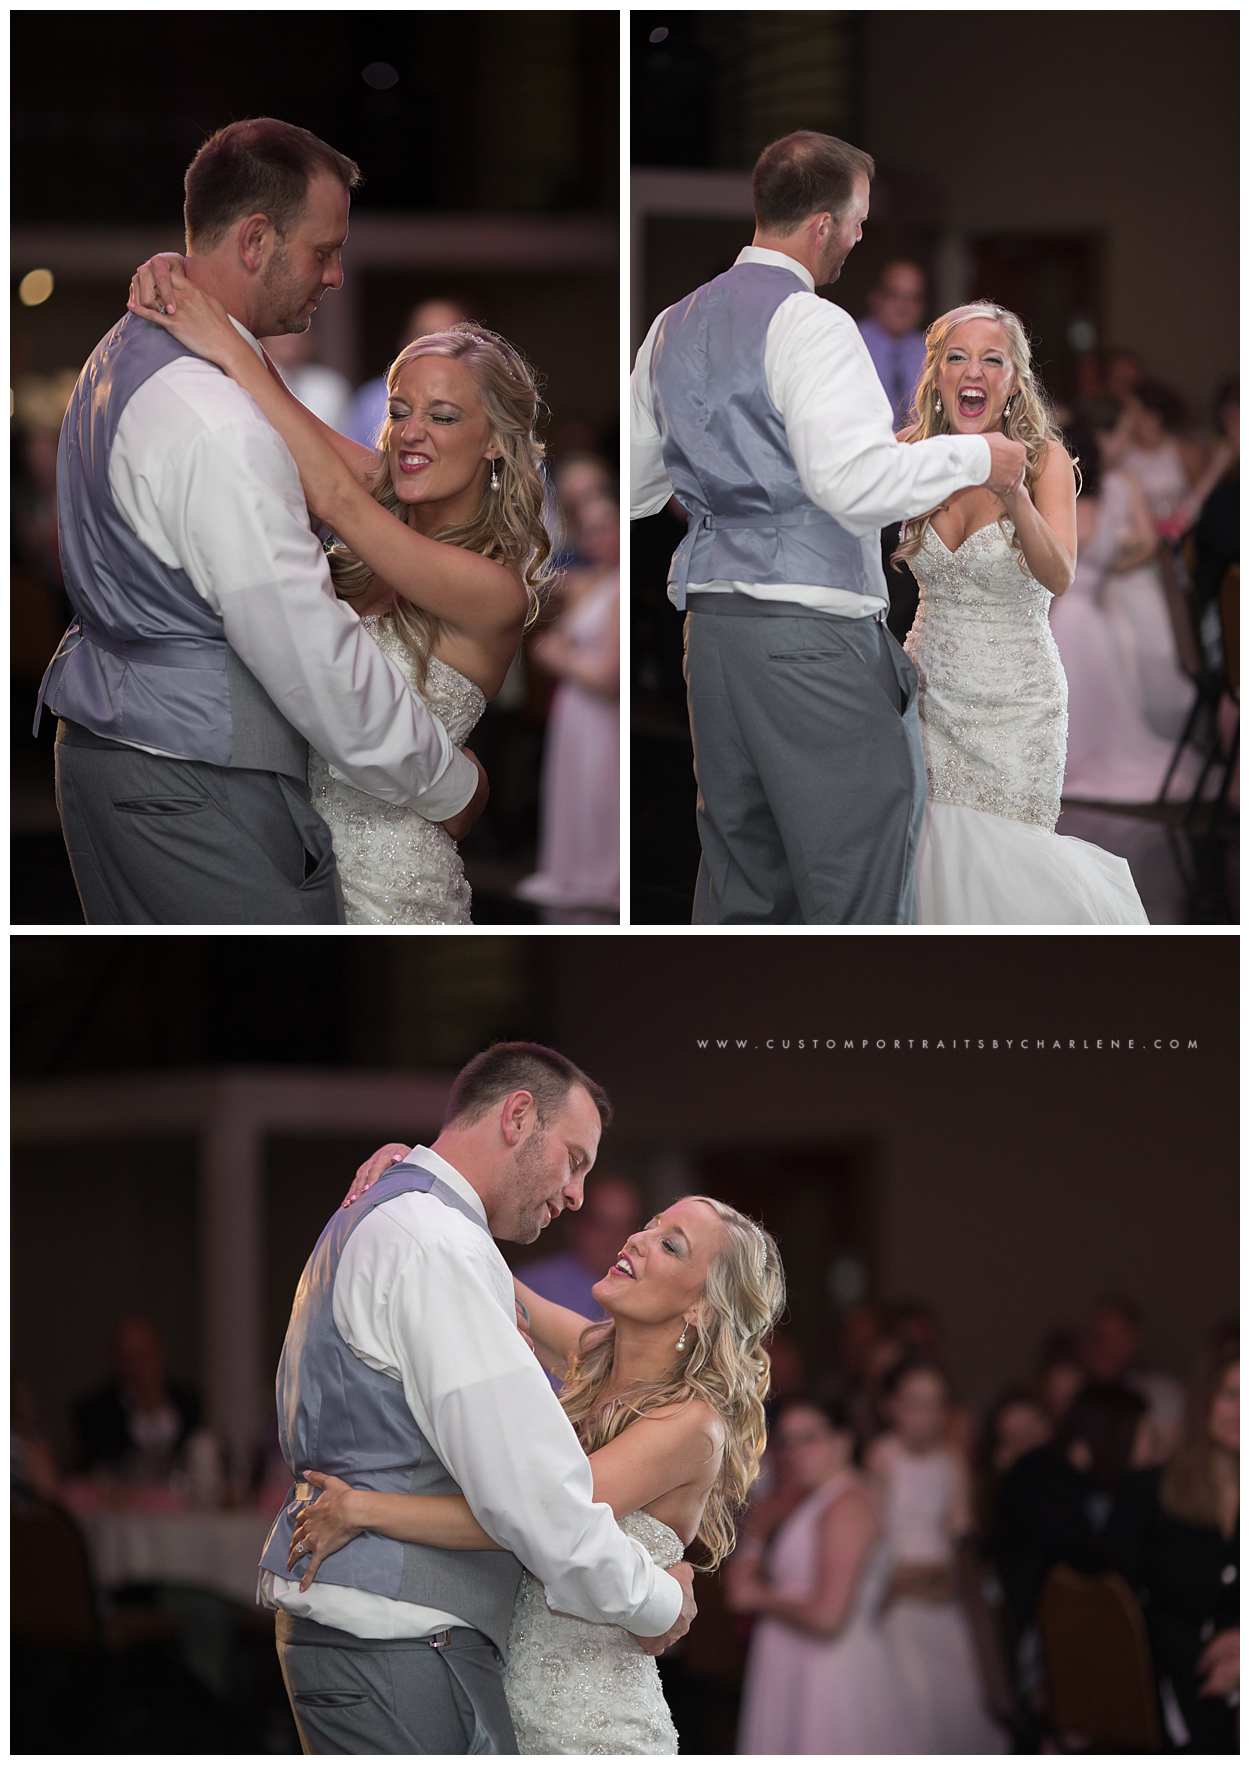 Fez Weddings - Balconade Room - Pittsburgh Wedding Photography Photographer3